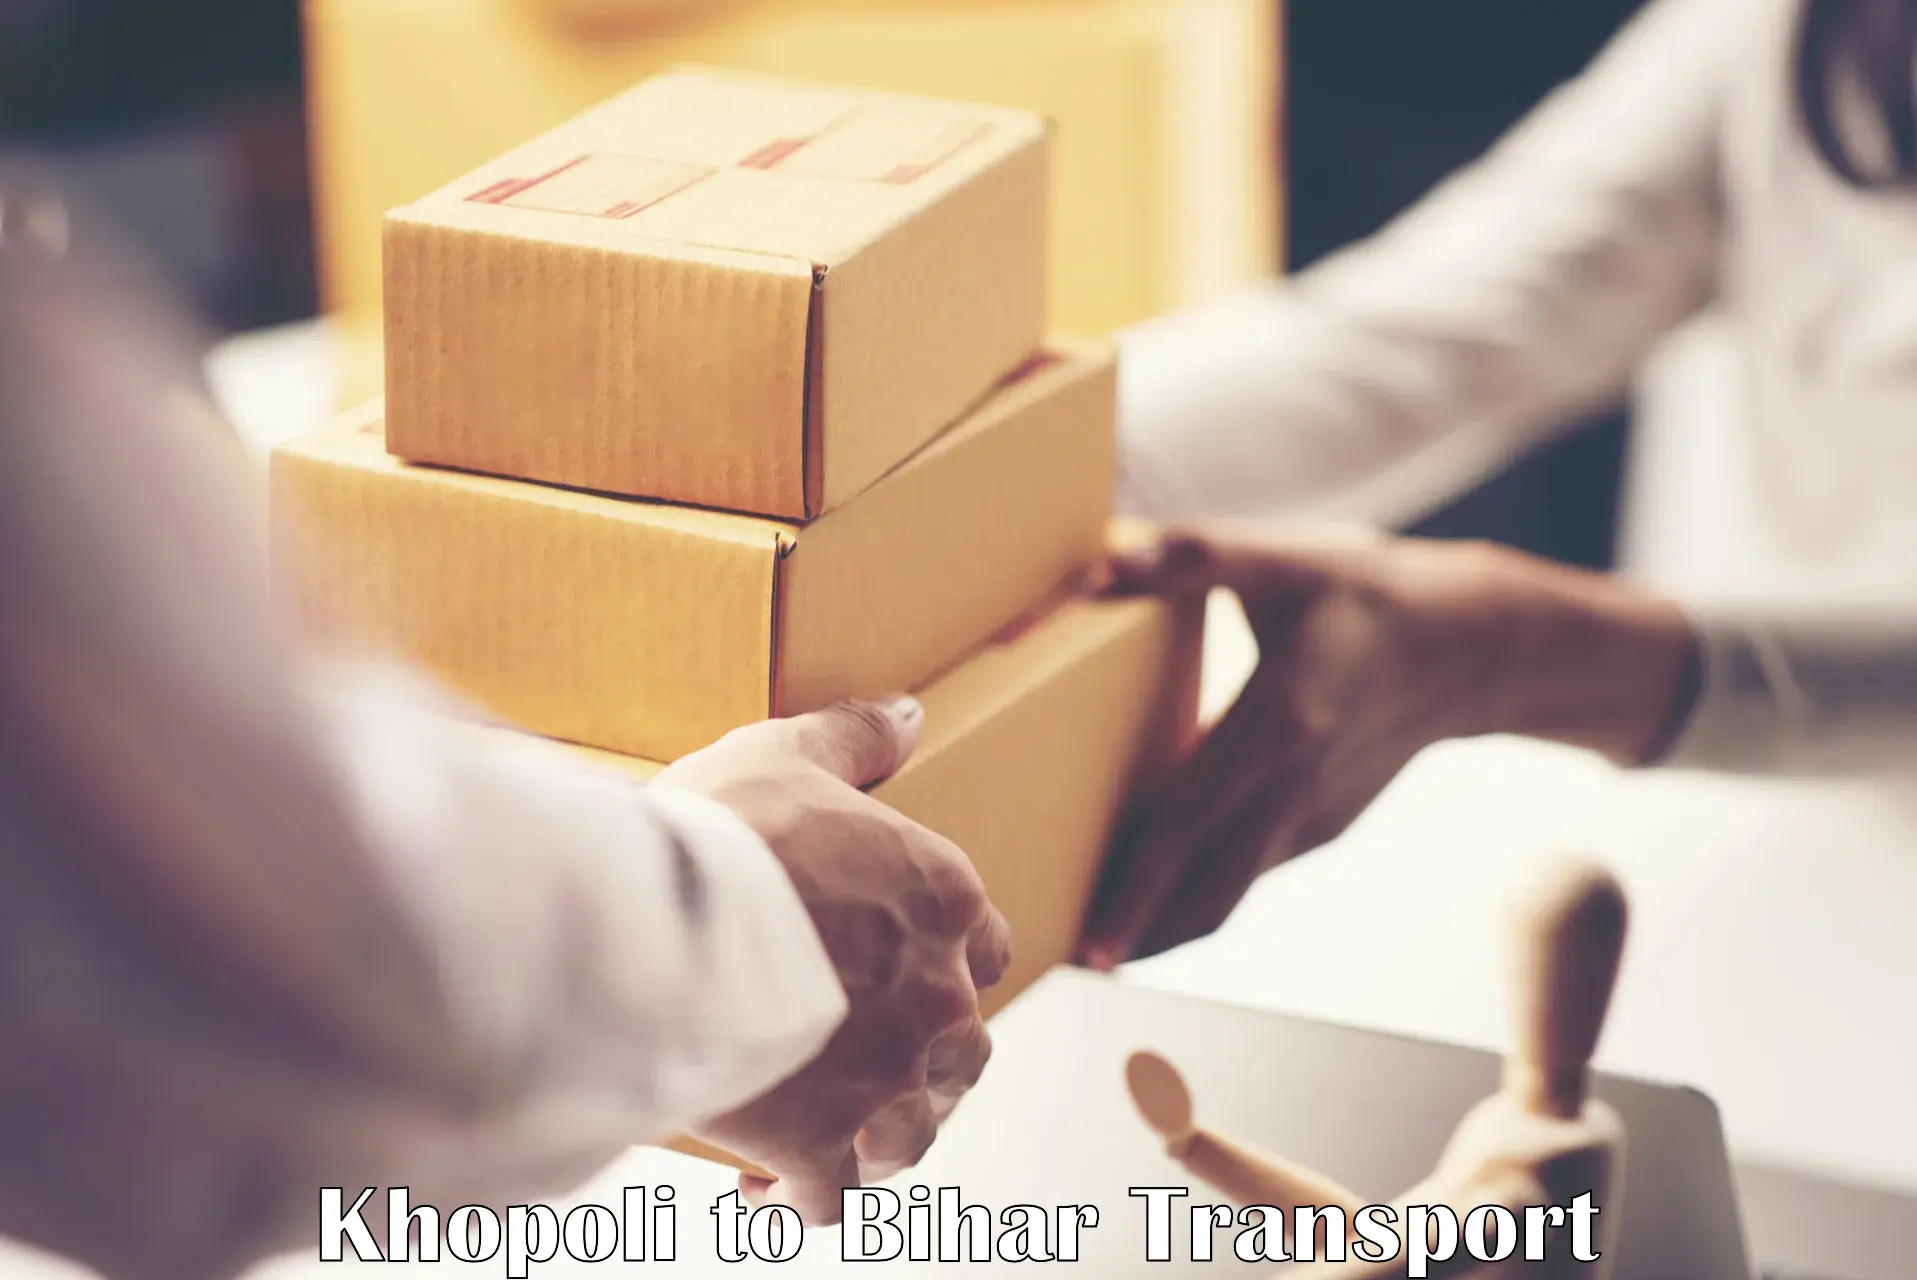 Shipping partner Khopoli to Banka